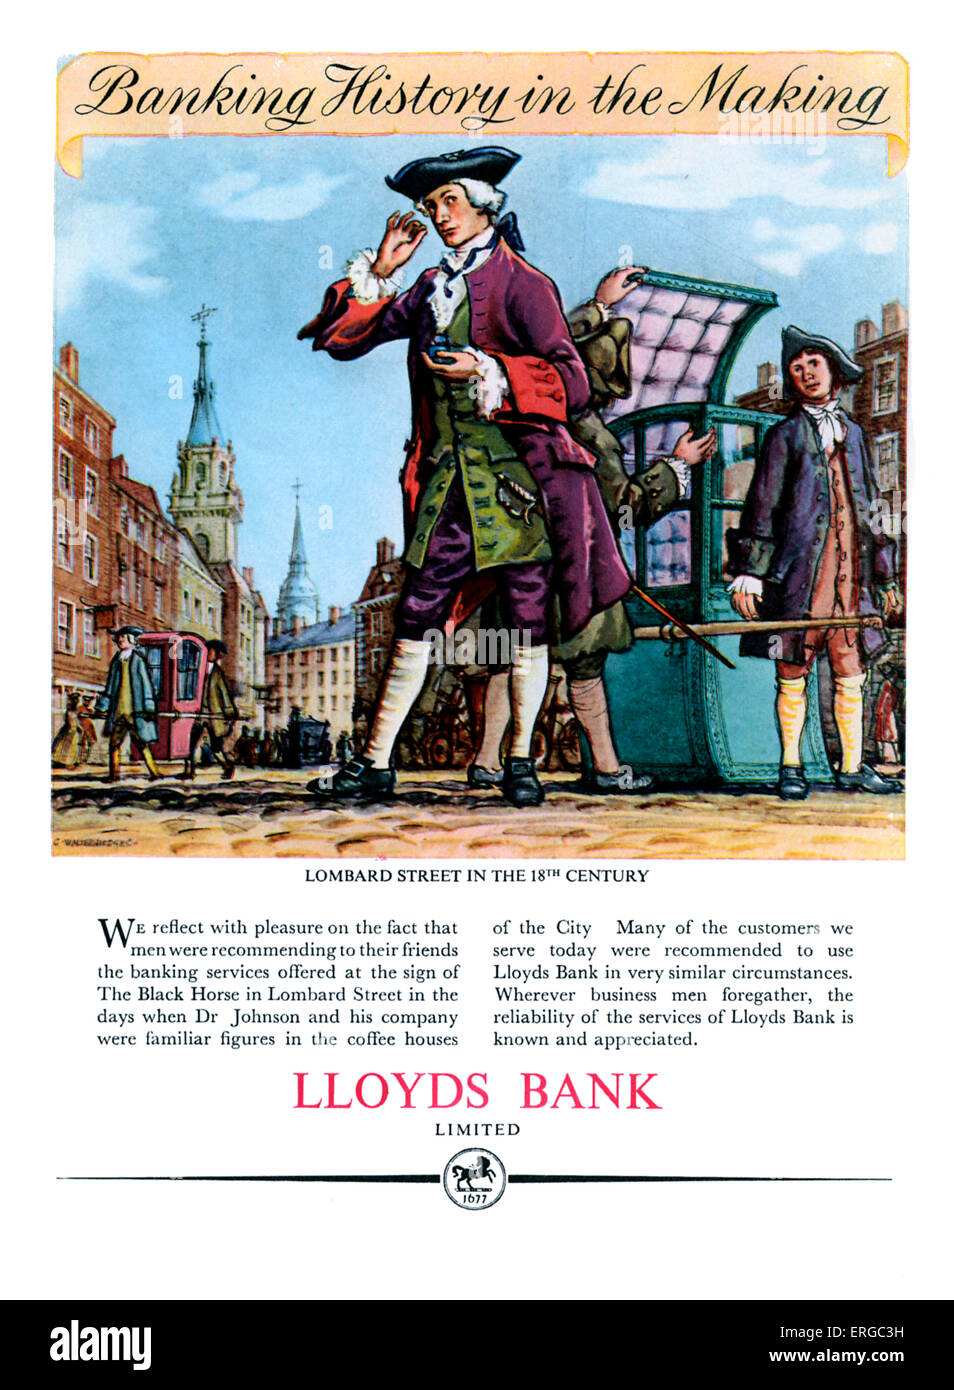 Werbung für Lloyds Bank. Quelle 1951.  Bildunterschrift lautet "Lombard Street im 18. Jahrhundert". Stockfoto